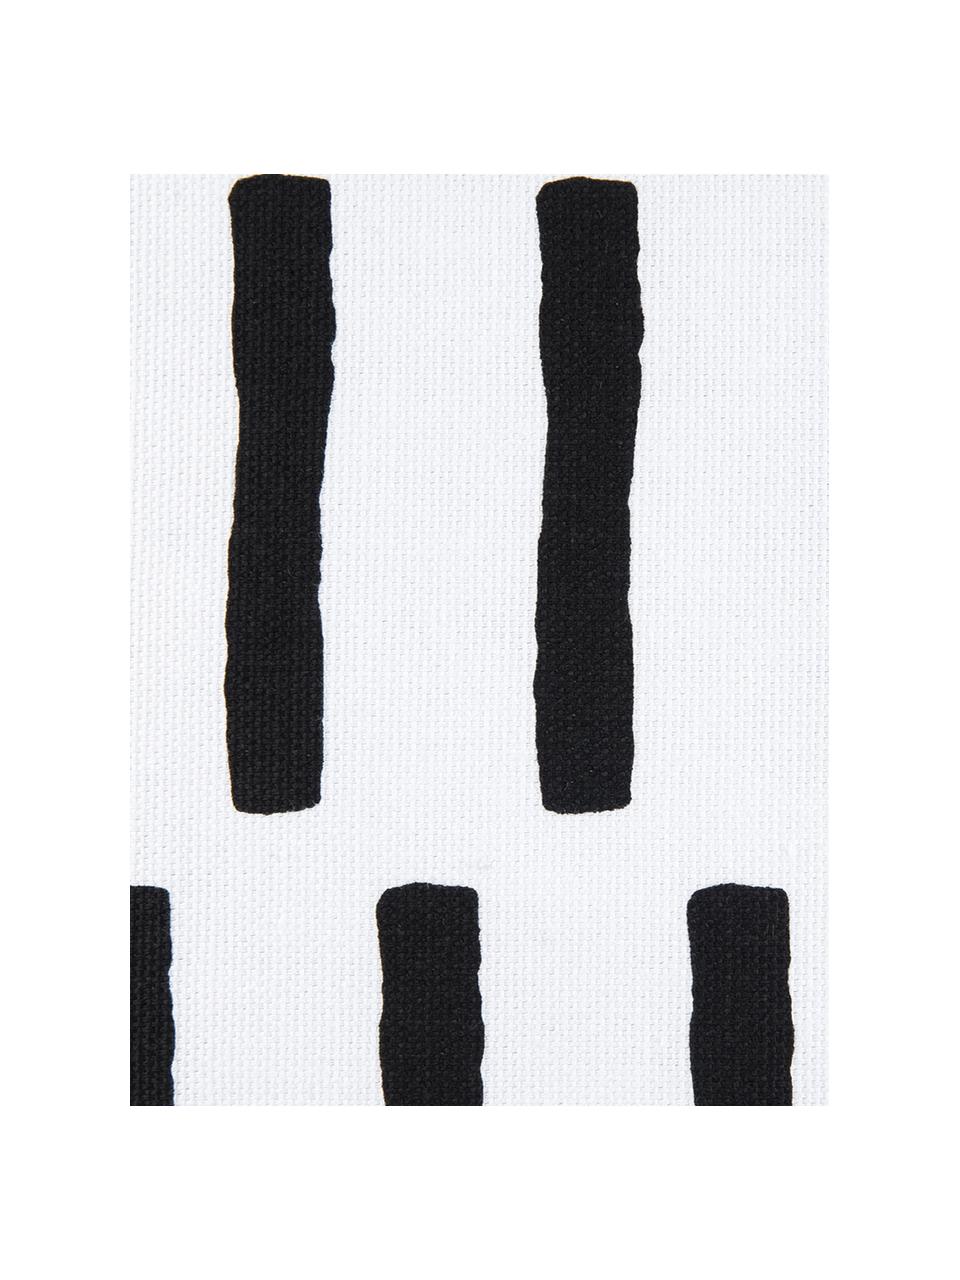 Kissenhülle Jerry, 100% Baumwolle, Schwarz, Weiß, B 40 x L 40 cm